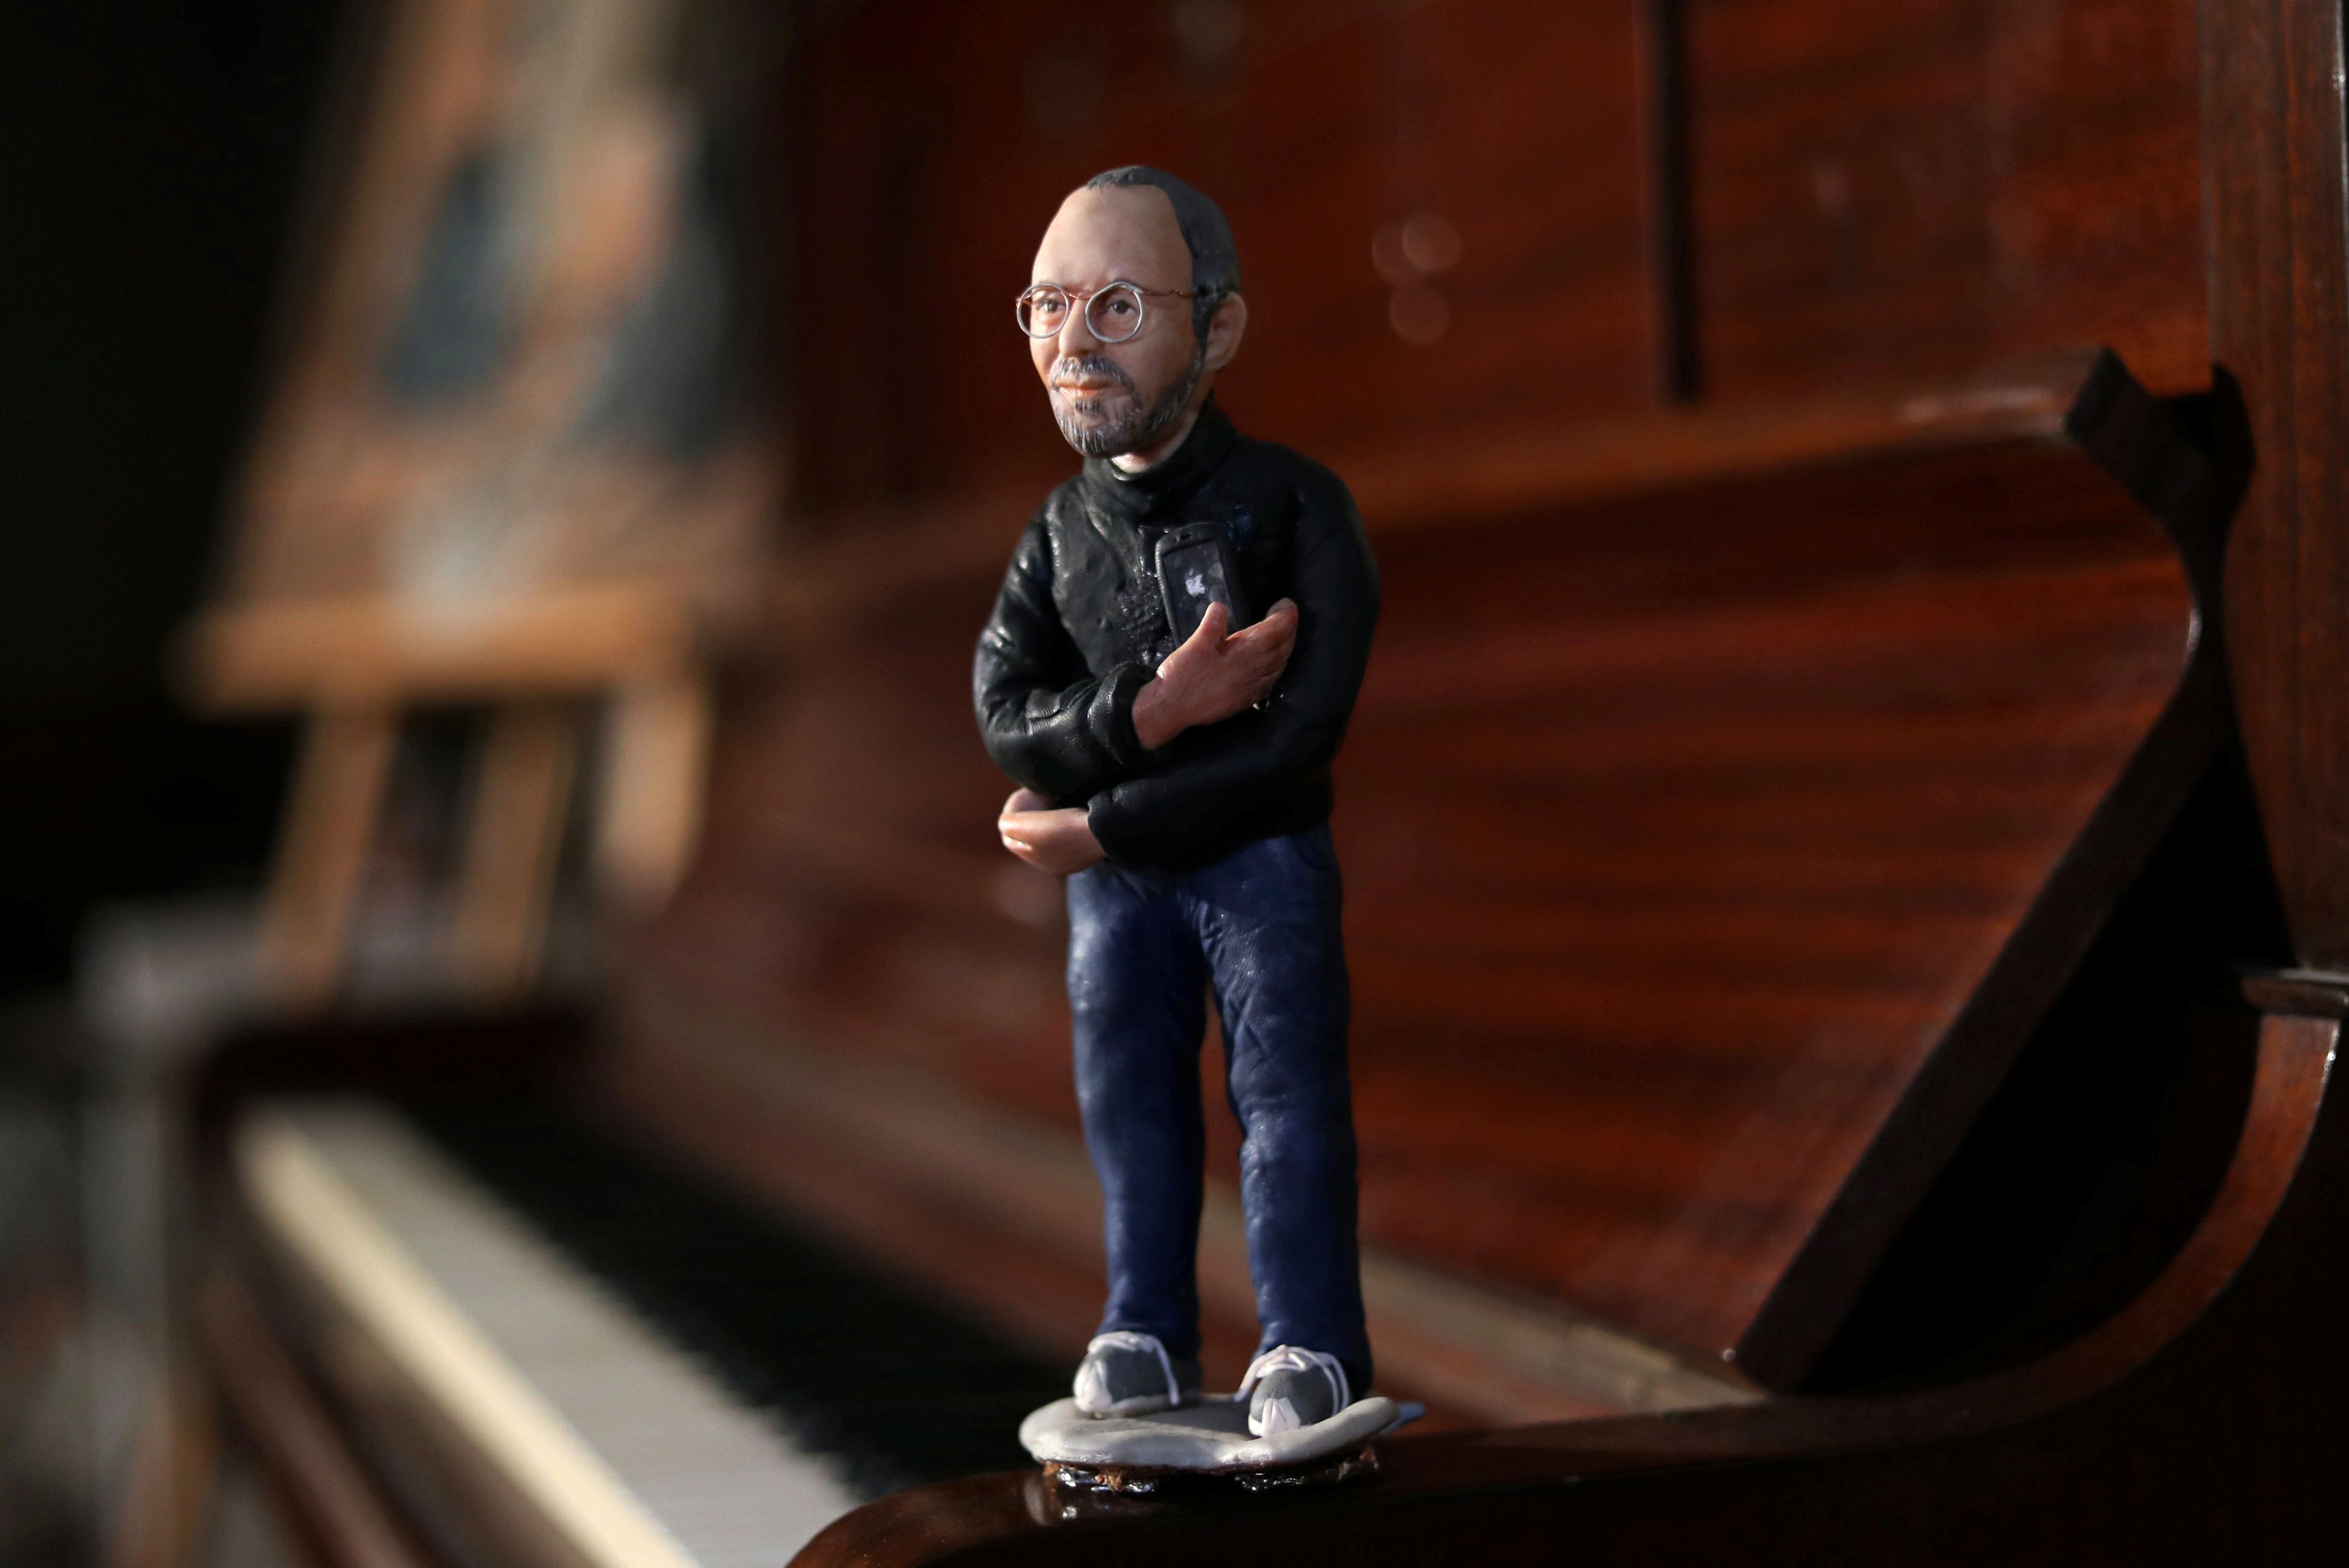 Figura de Steve Jobs, sobre un piano